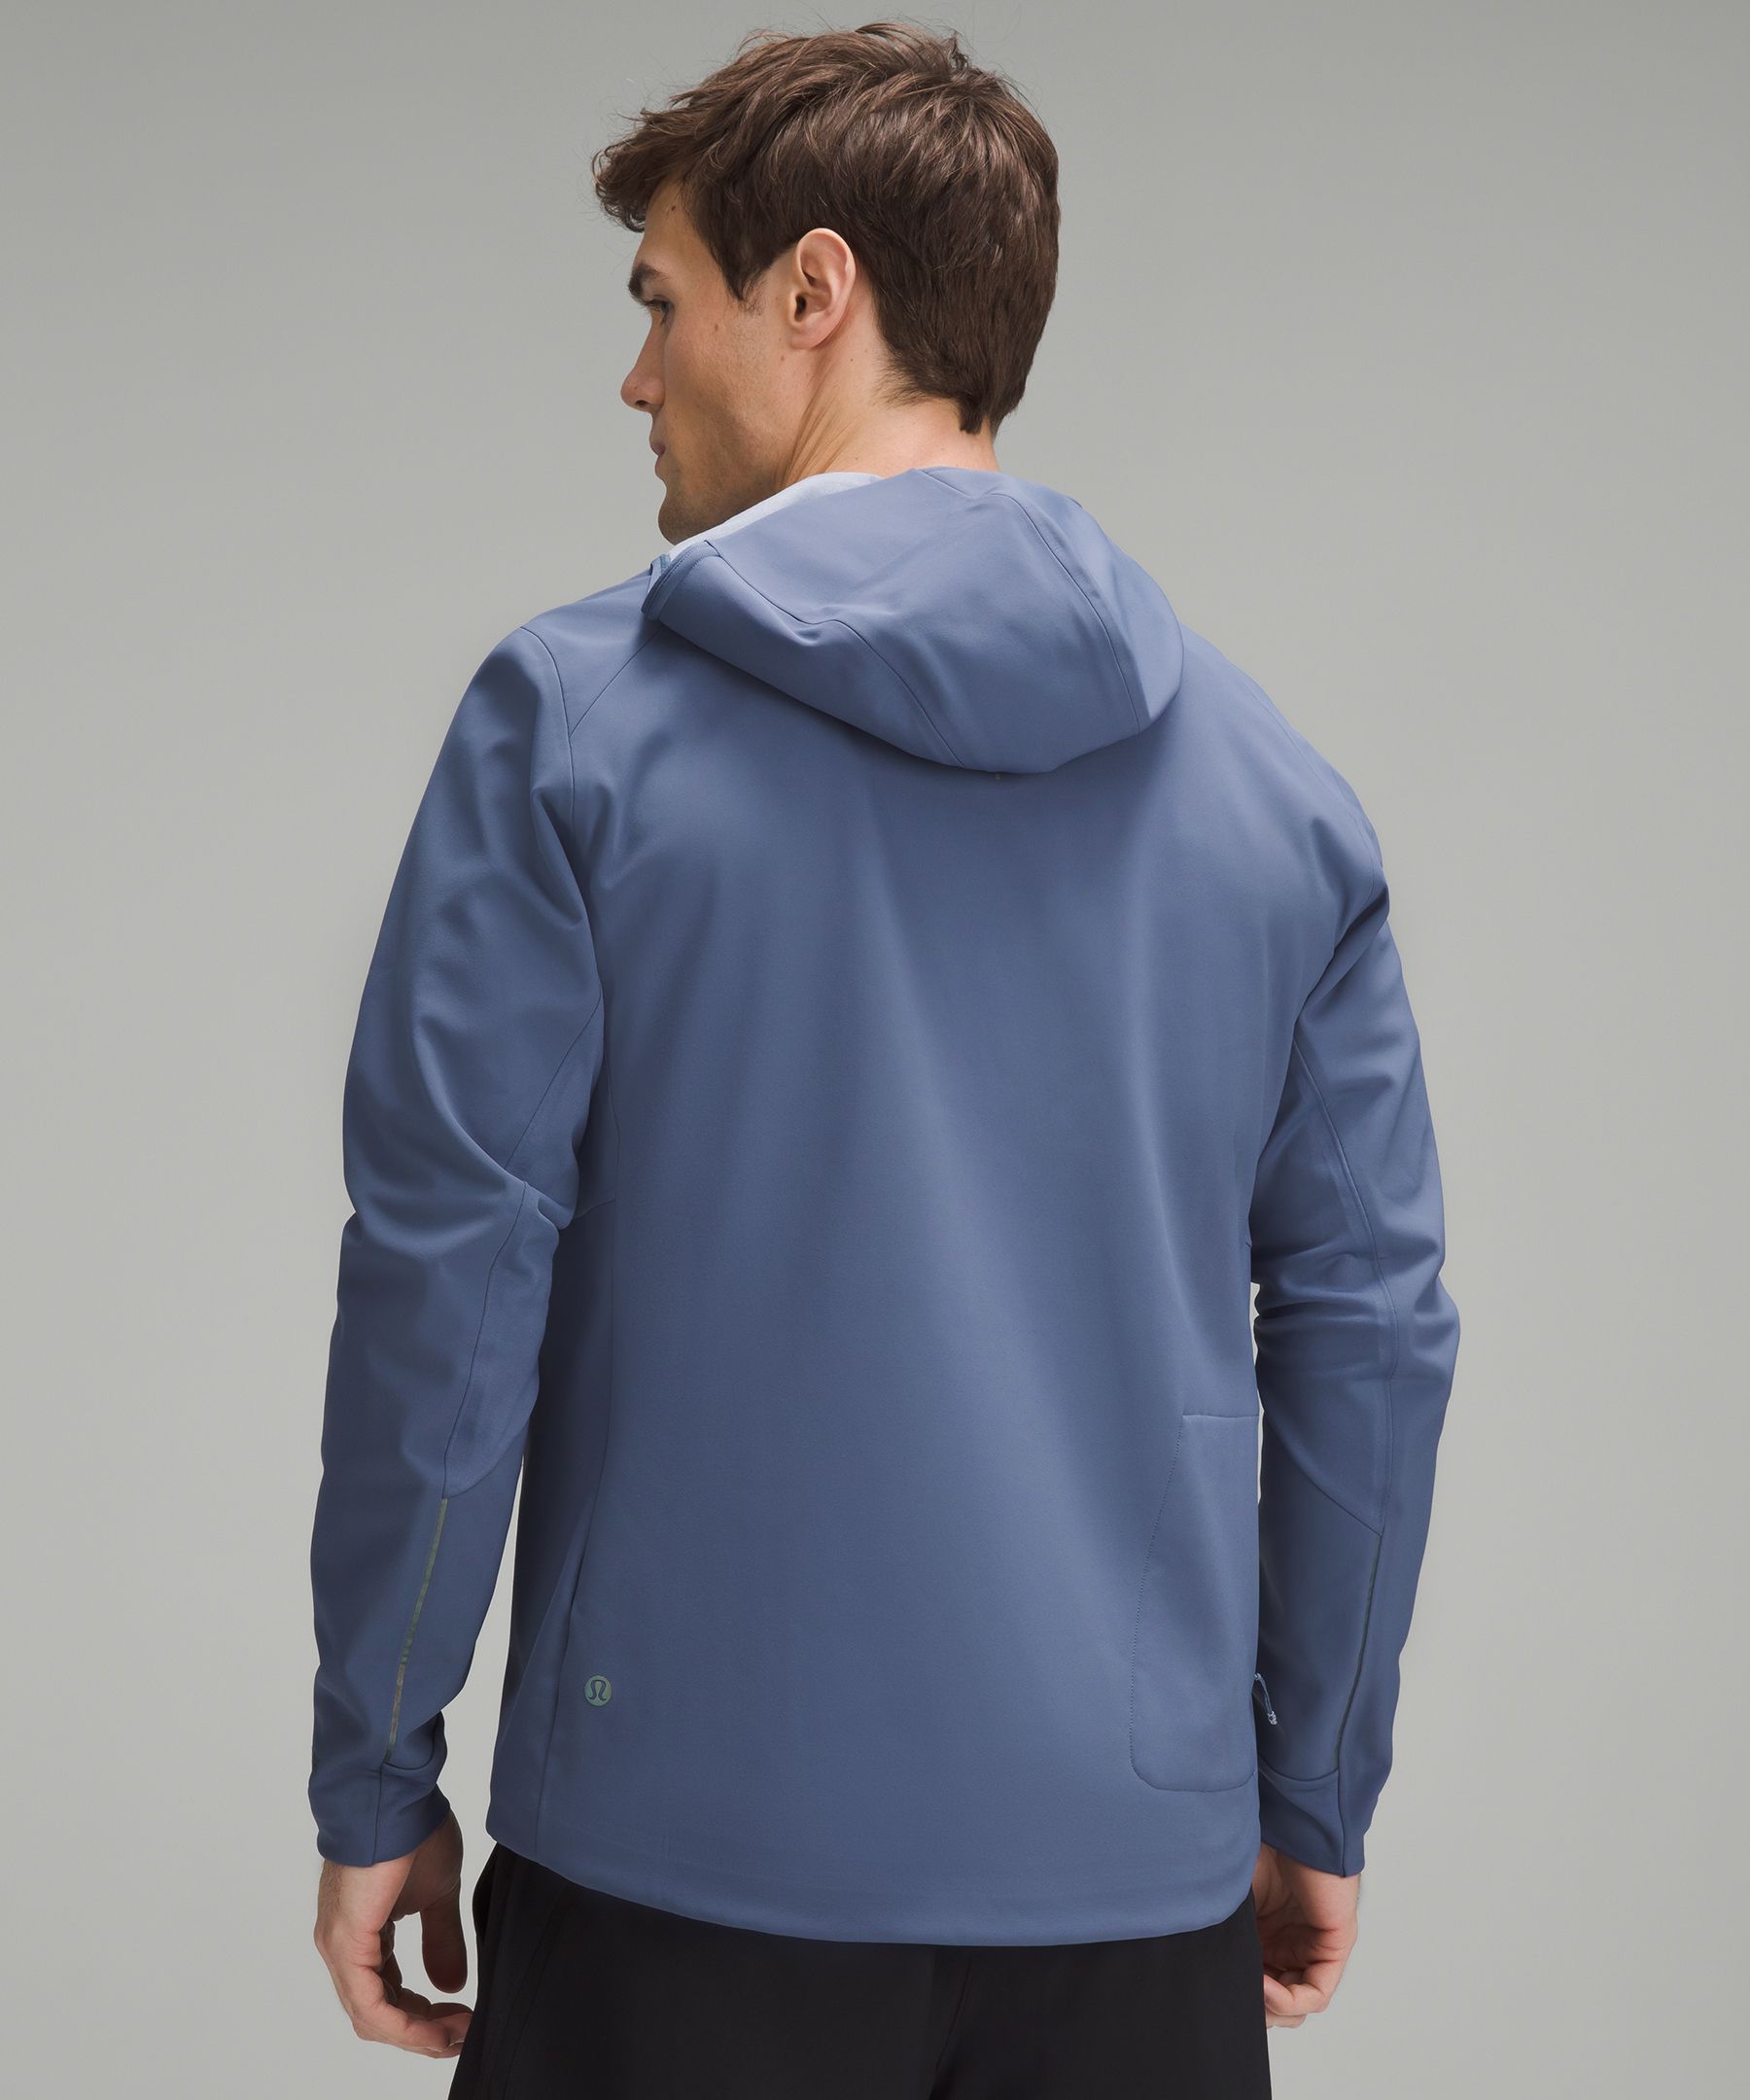 New Lululemon Cross Chill Jacket RepelShell Size 8 Sheer Blue